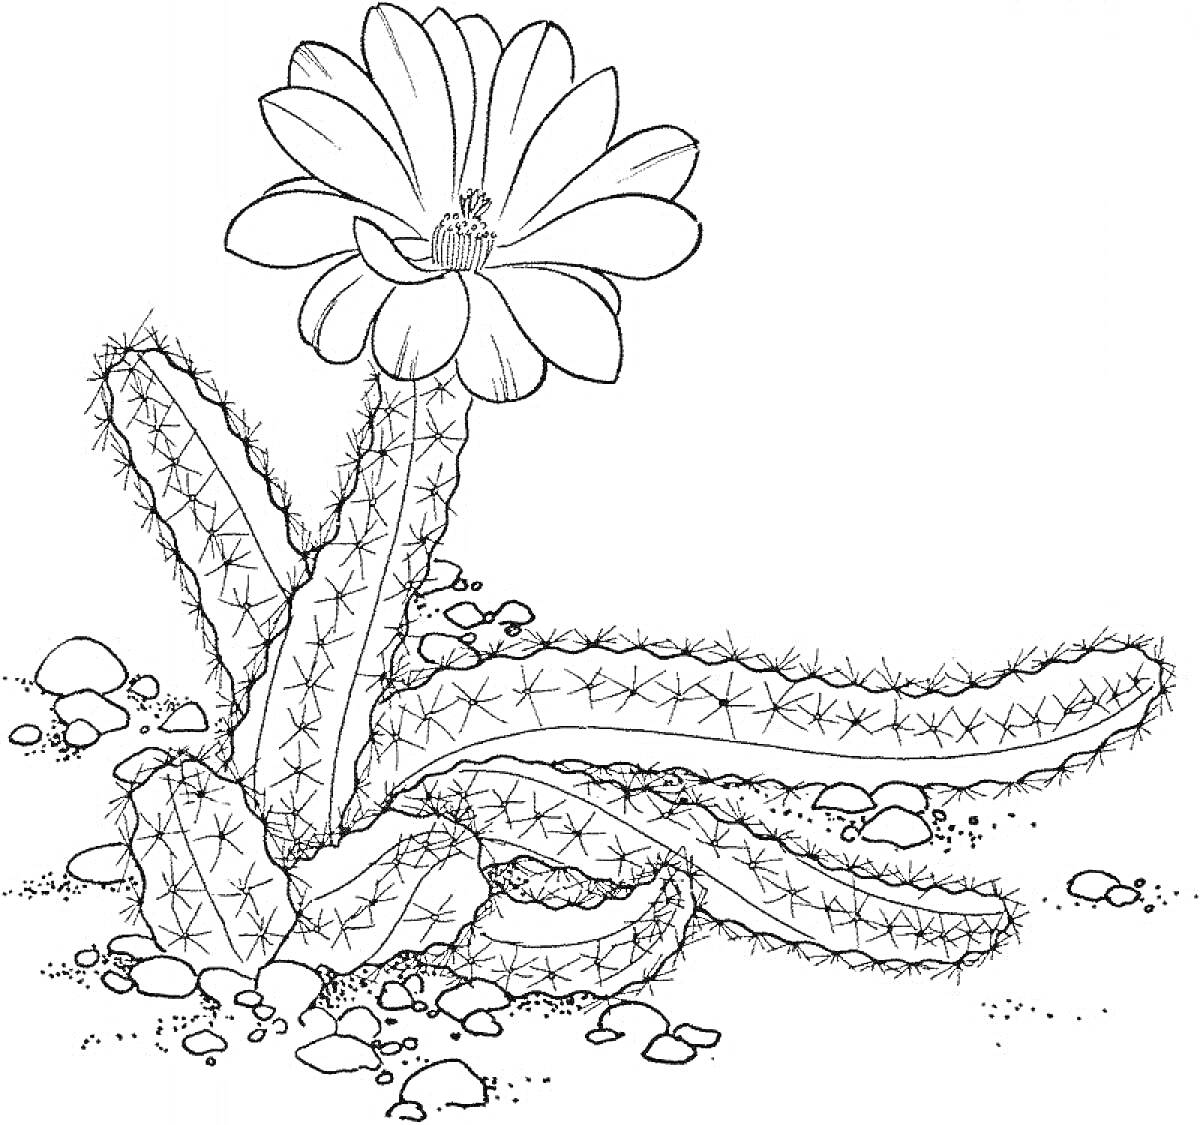 РаскраскаКактус с цветком на песчаной почве с галькой